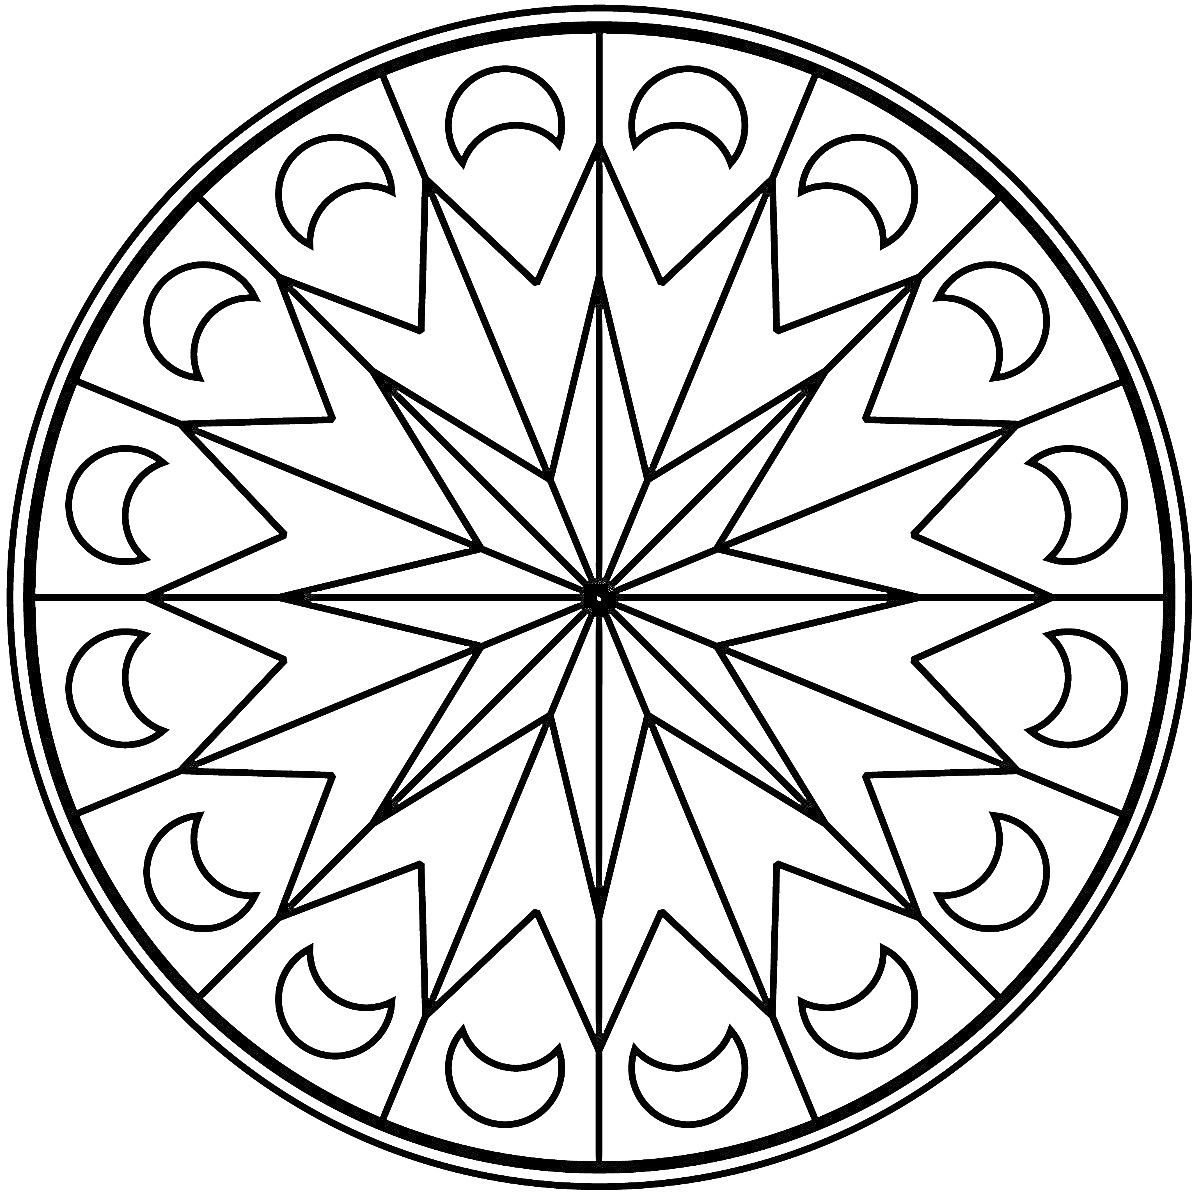 Раскраска Мандала с центральной звездой, окруженная лунообразными элементами и треугольниками.